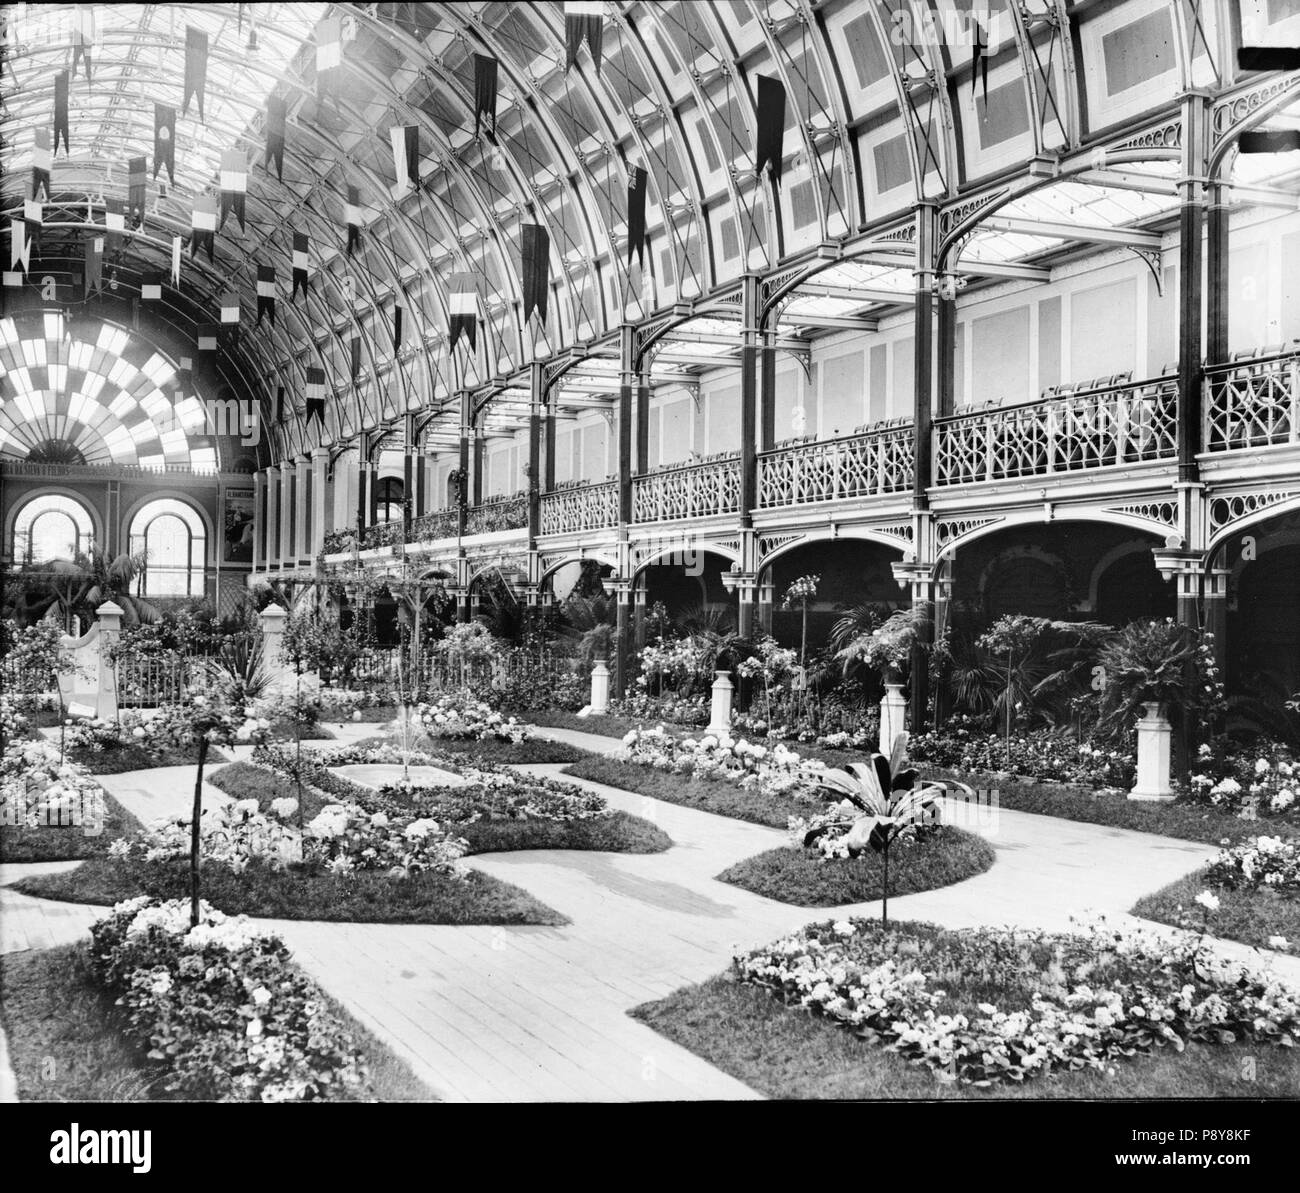 280 Exposição de floricultura Keine antigo Palácio de Cristal em 1908 (APR) (9289618531) Stockfoto